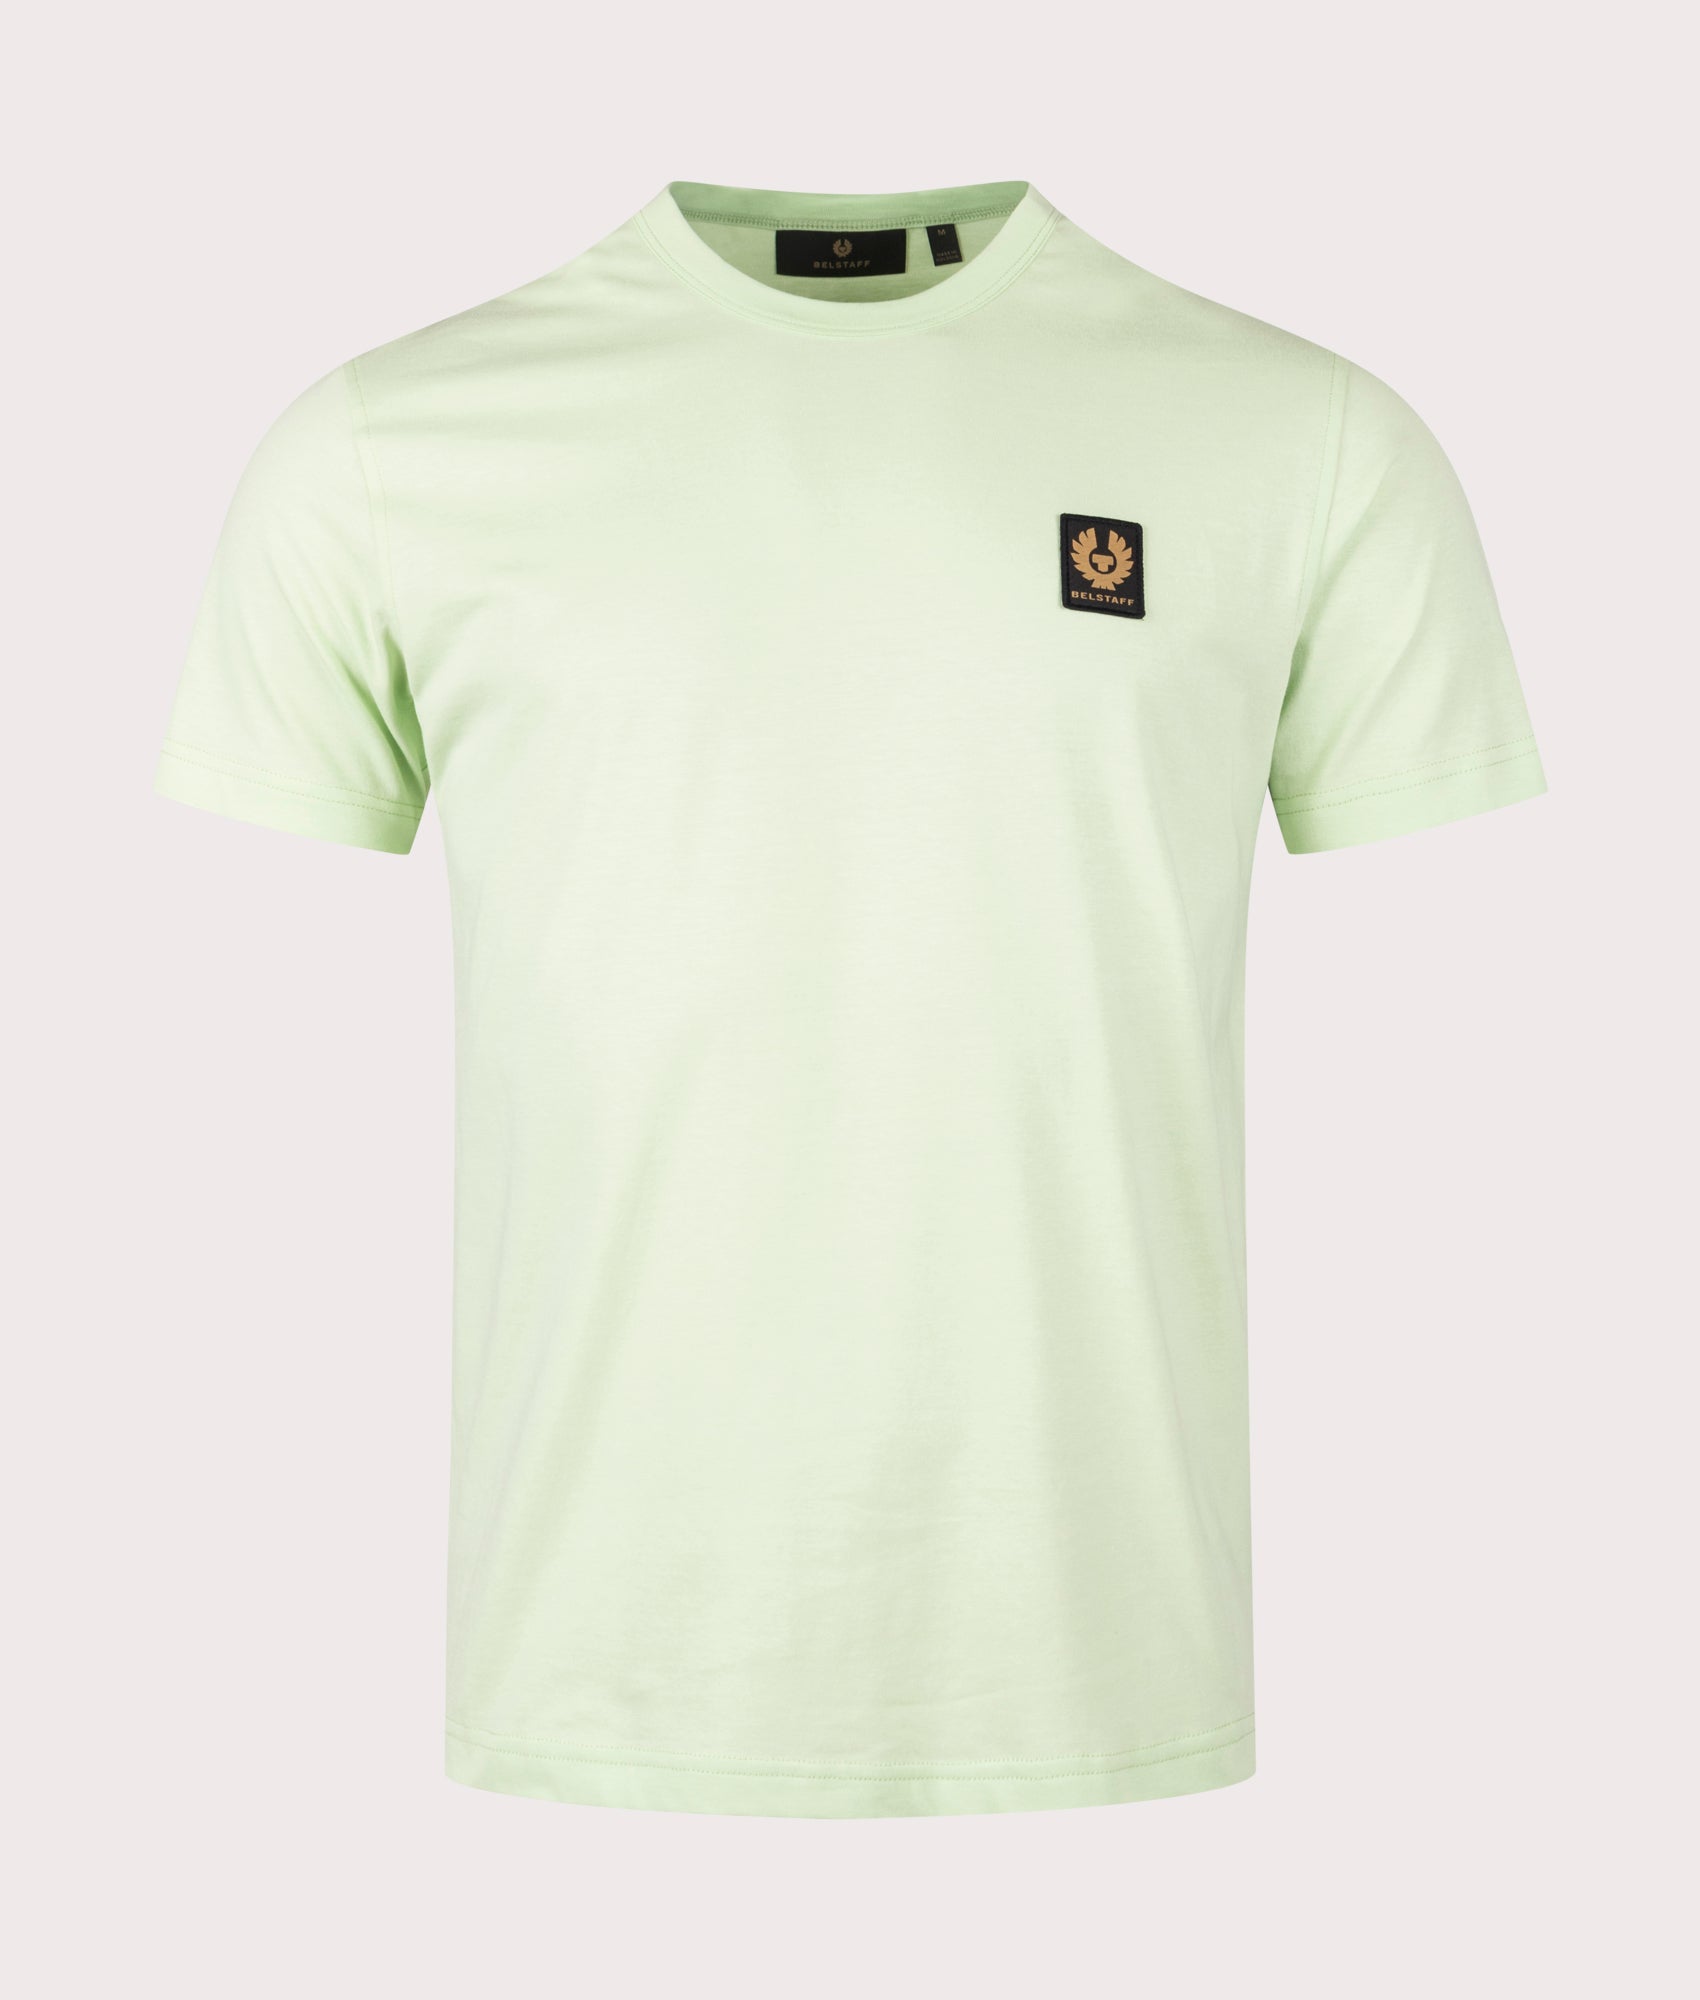 Belstaff Mens Belstaff T-Shirt - Colour: New Leaf Green - Size: XXL